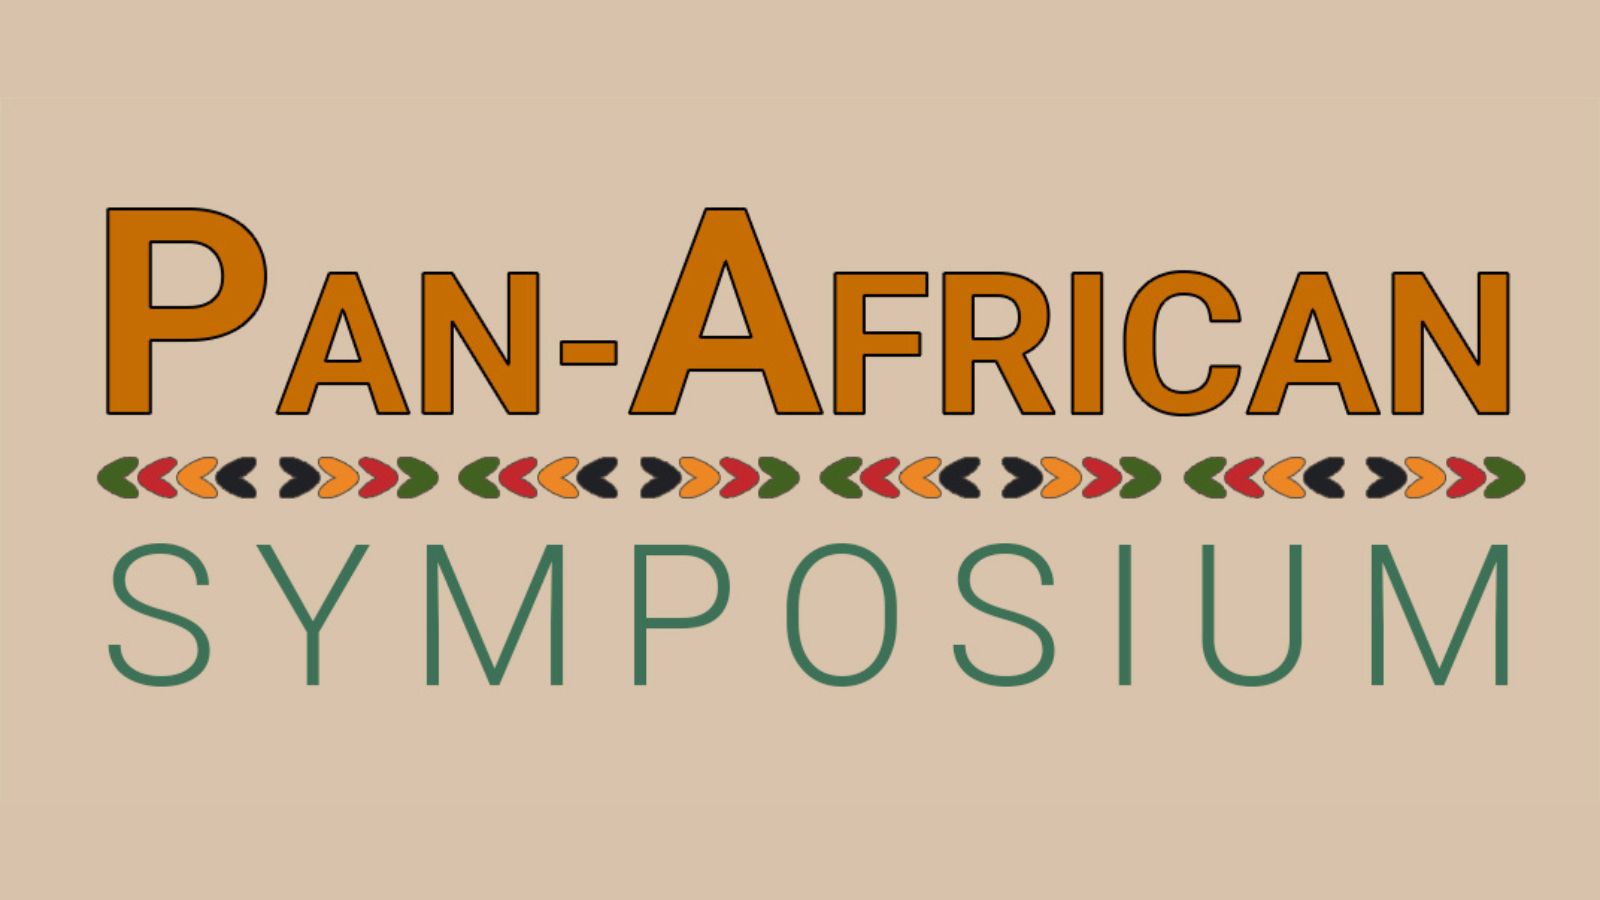 Pan-African Symposium